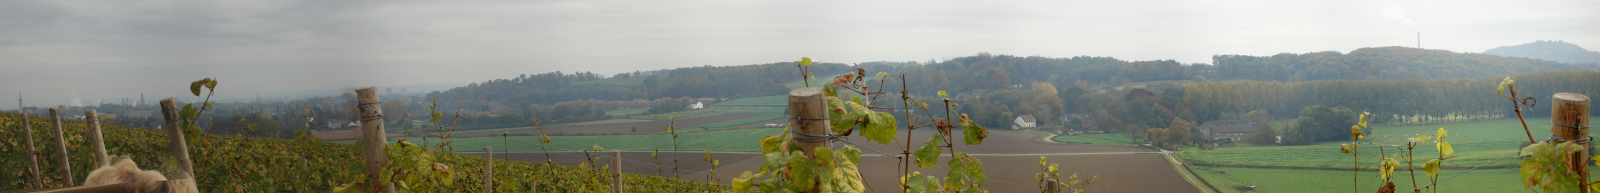 Wijngaard Apostelhoeve - panoramafoto zuidelijke helling- panorama 2